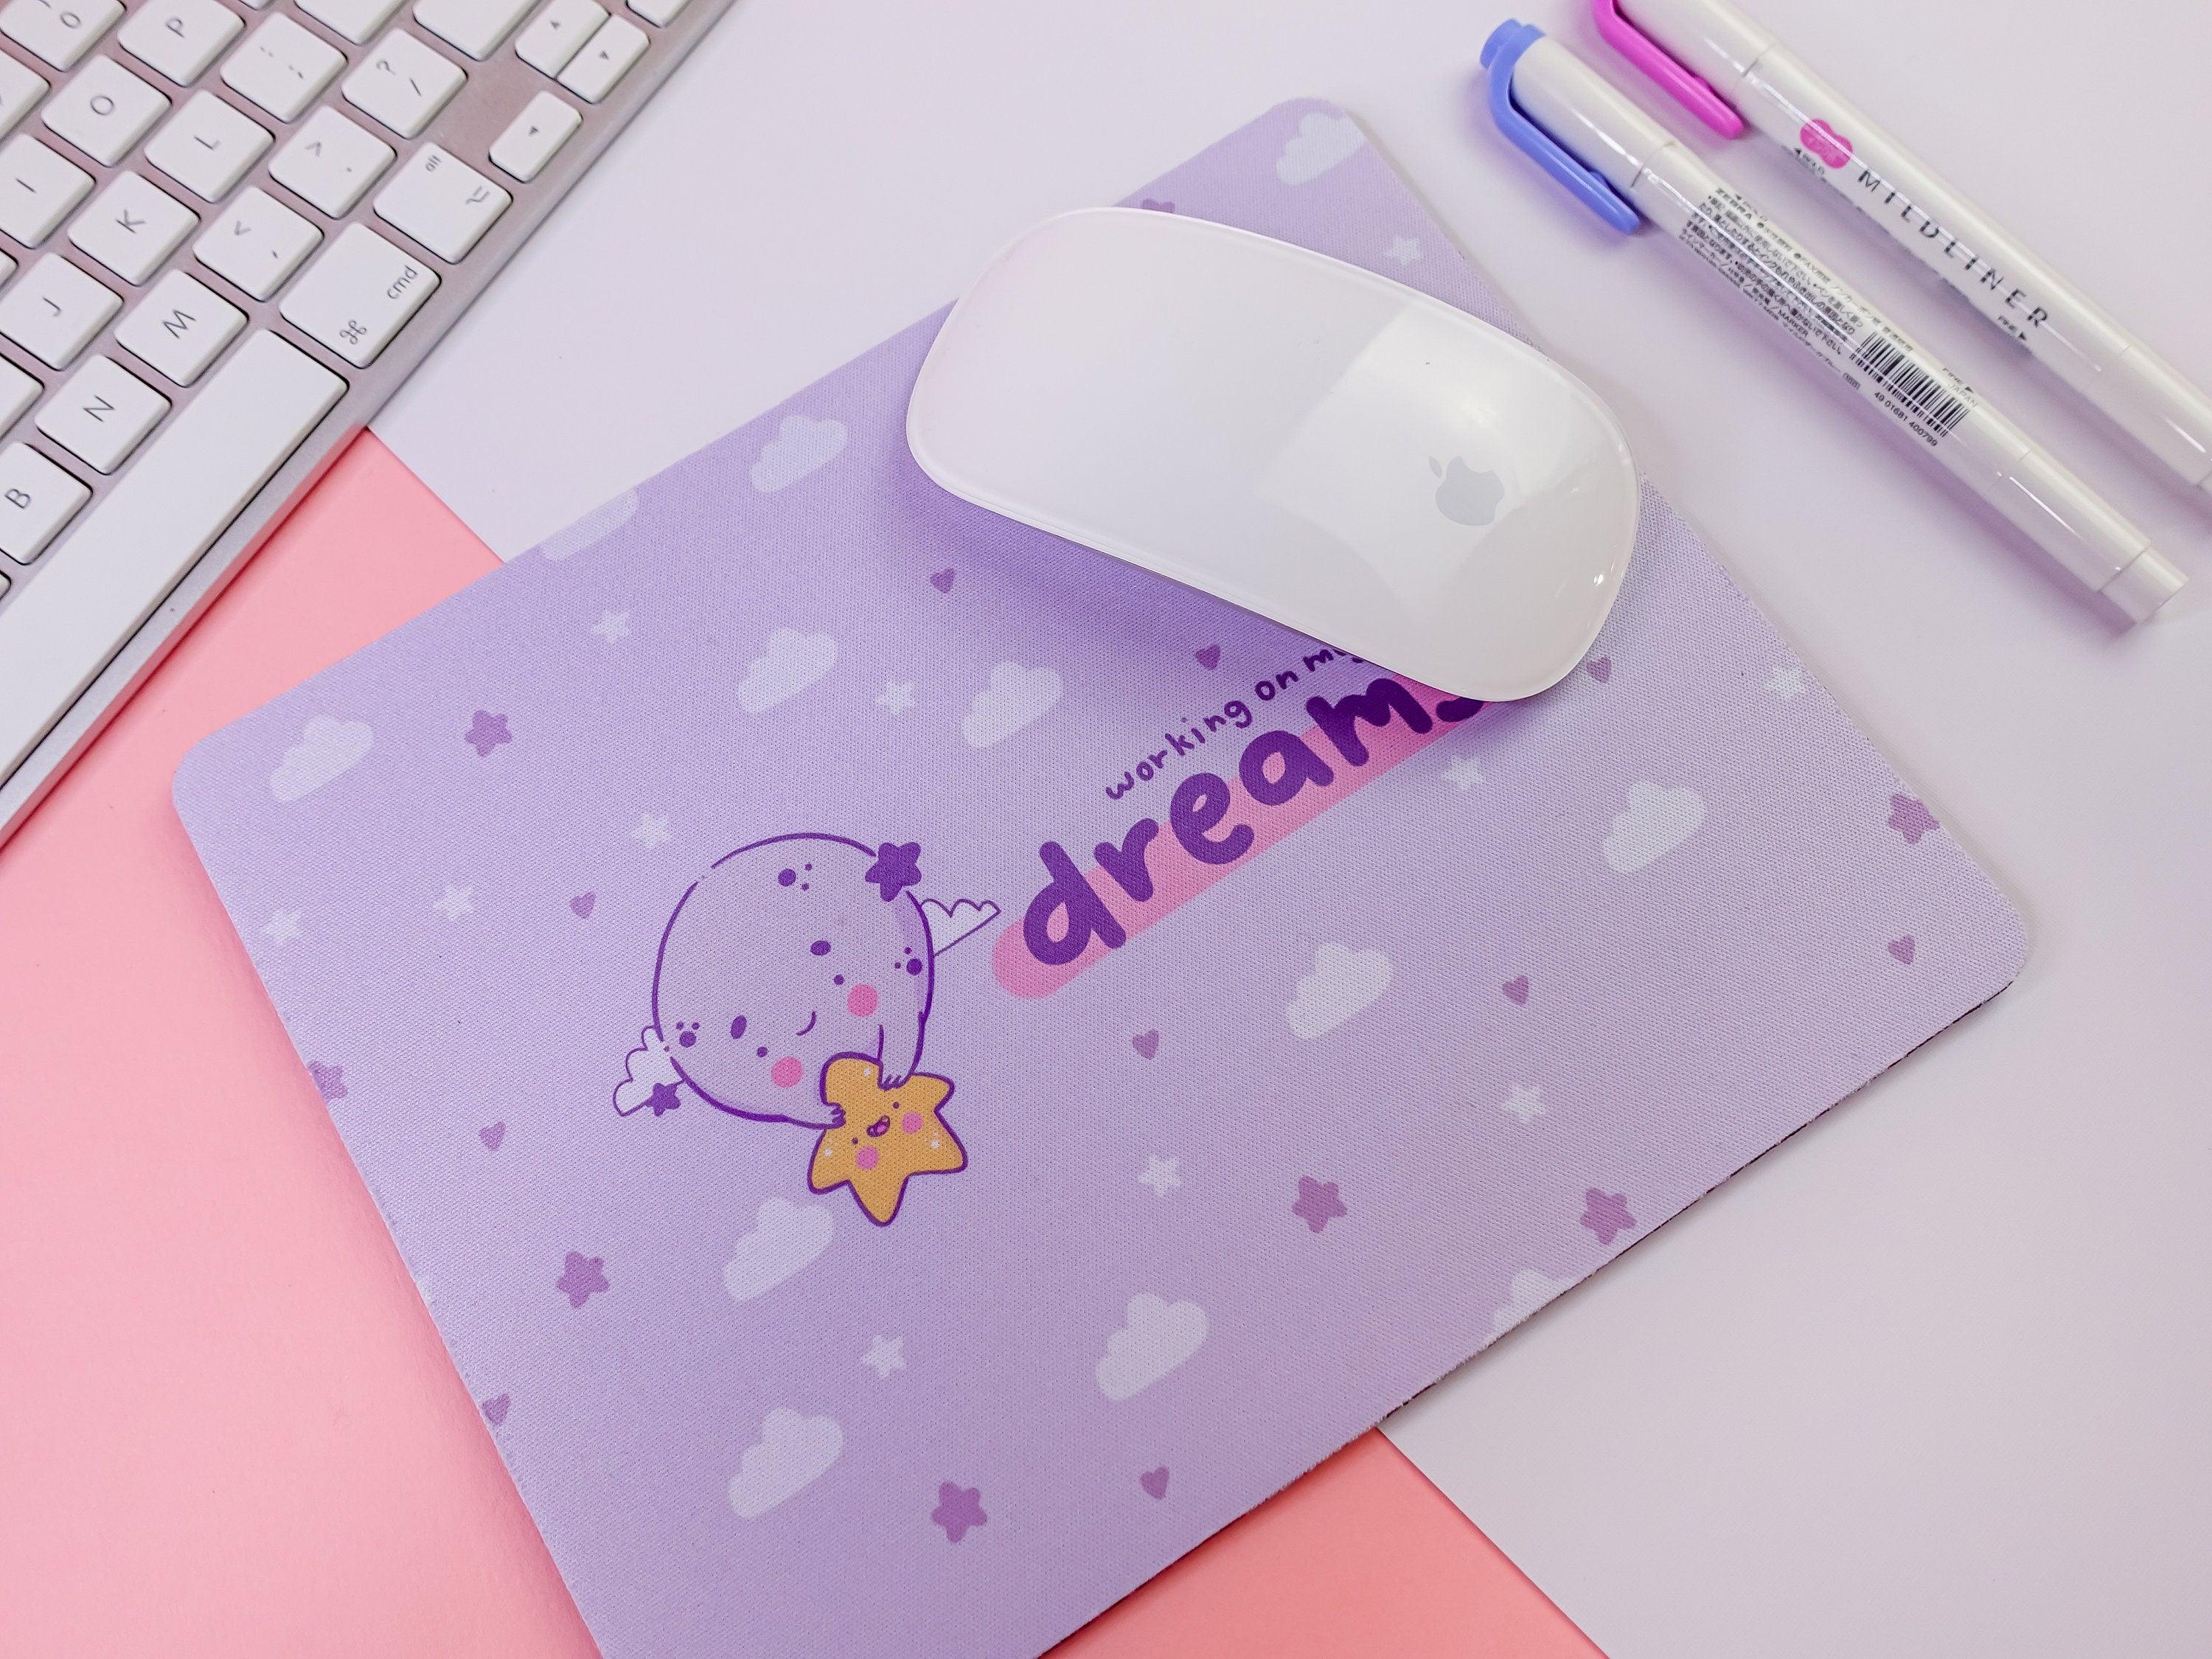 Kawaii Moon Mouse Mat ~ Positive Dreams Rectangle Mousepad - Katnipp Illustrations